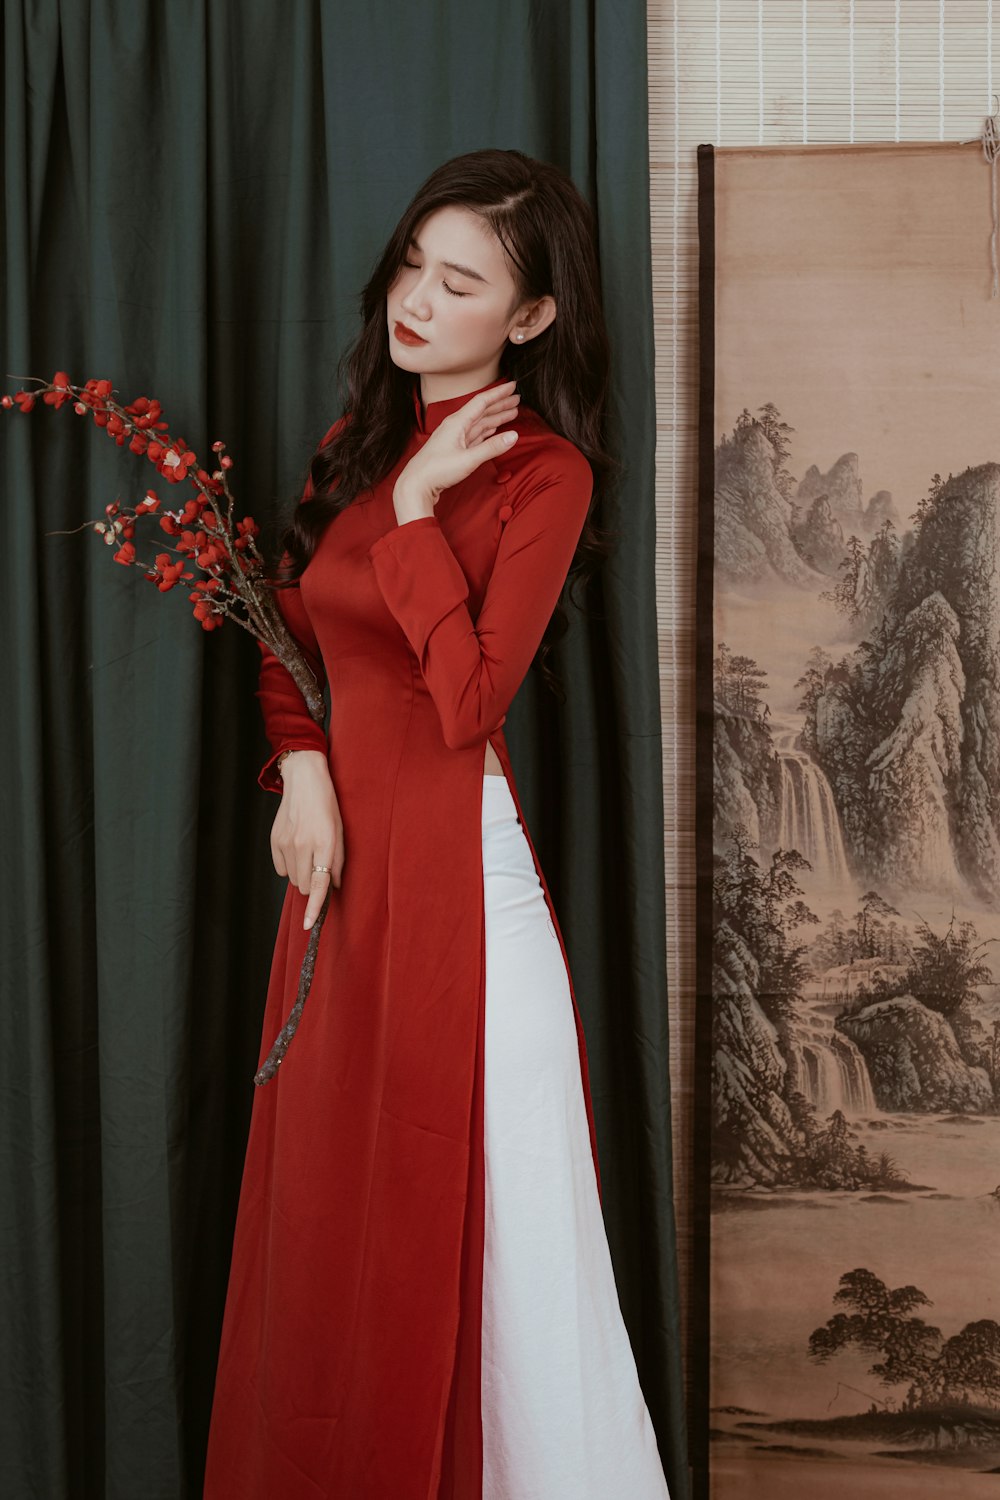 eine Frau in einem langen roten Mantel und weißem Kleid